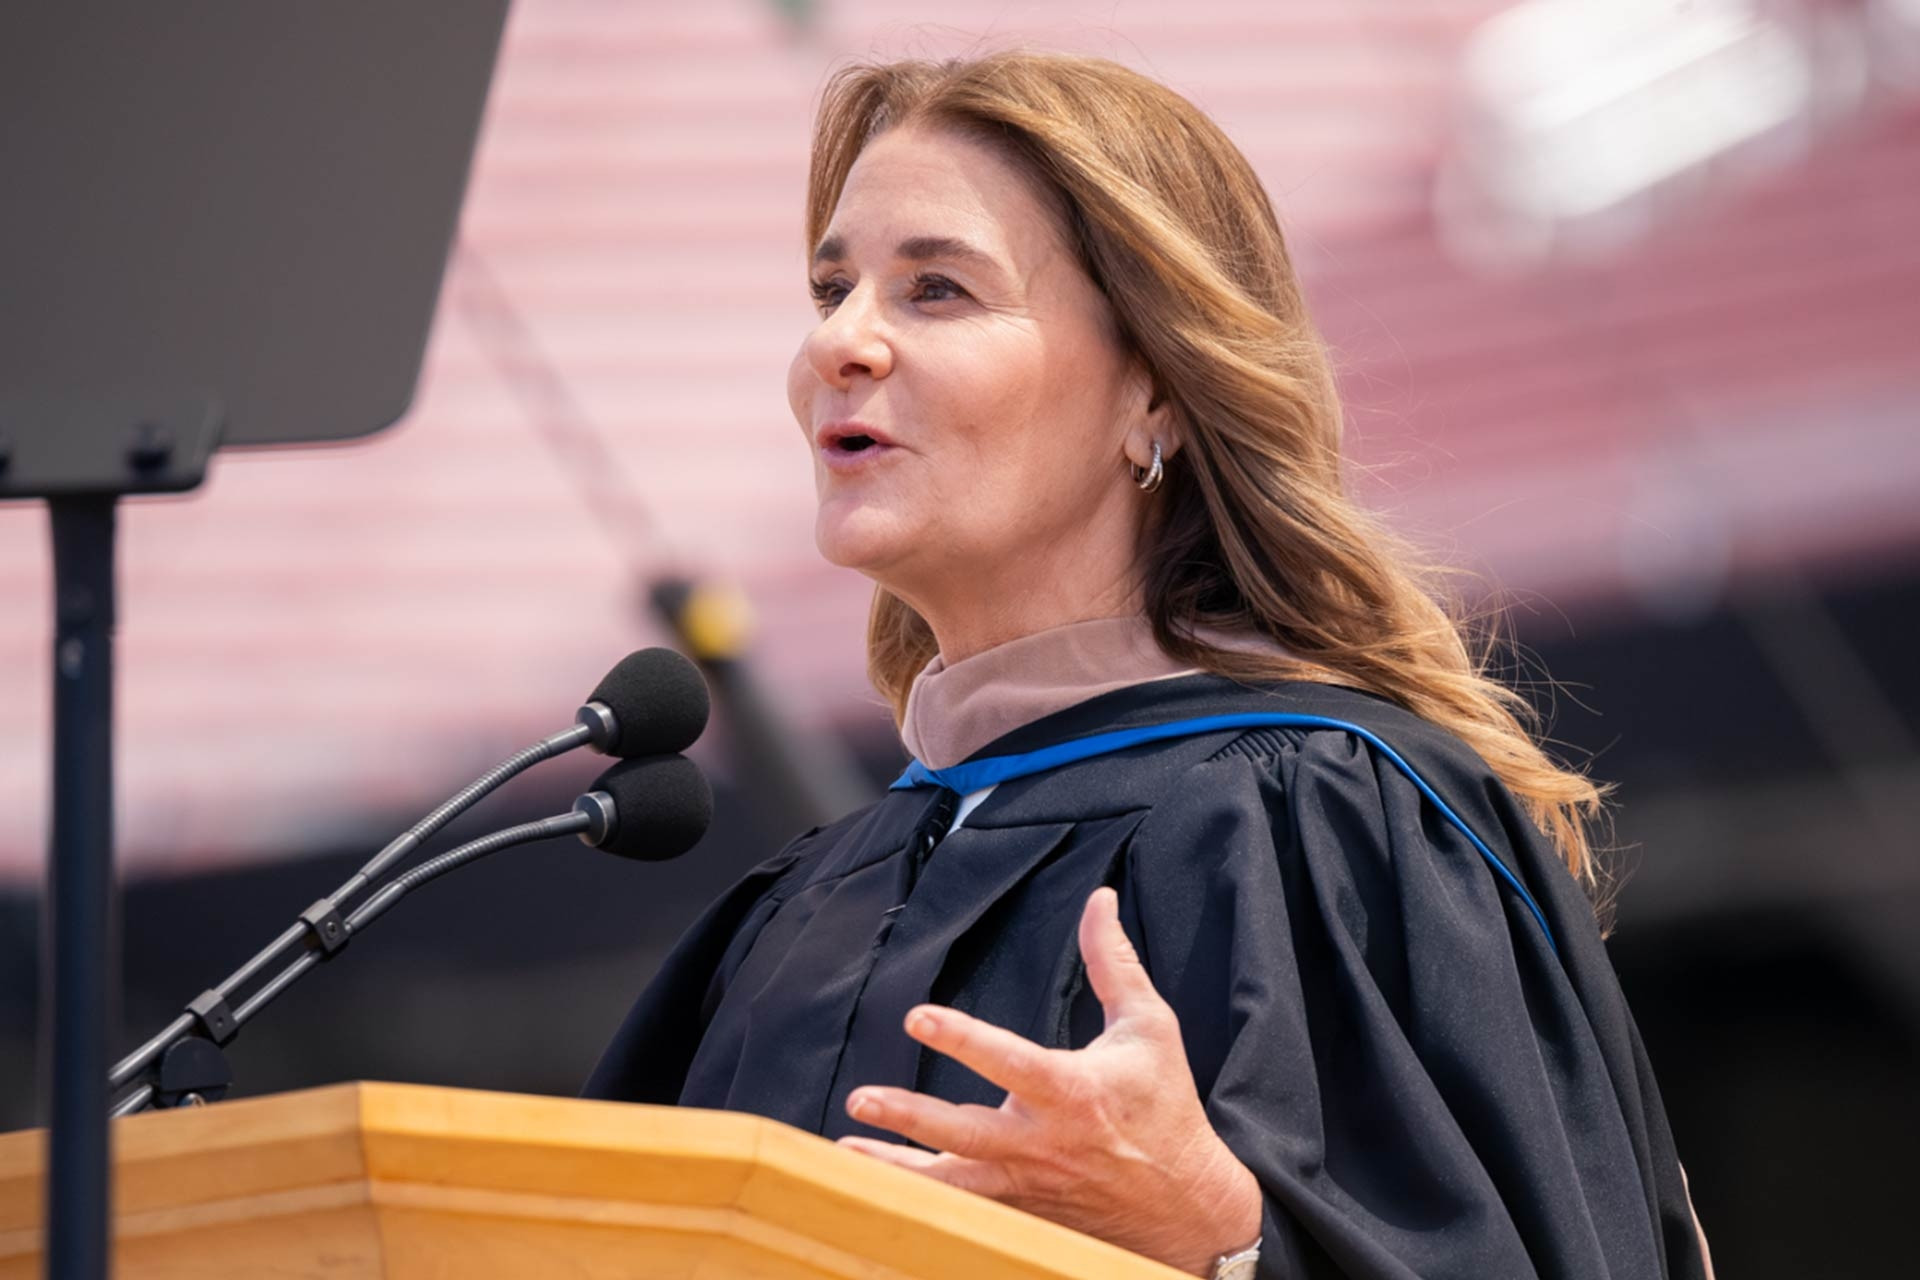  Bài phát biểu gây sốt của vợ tỷ phú Bill Gates tại lễ tốt nghiệp ĐH Stanford 